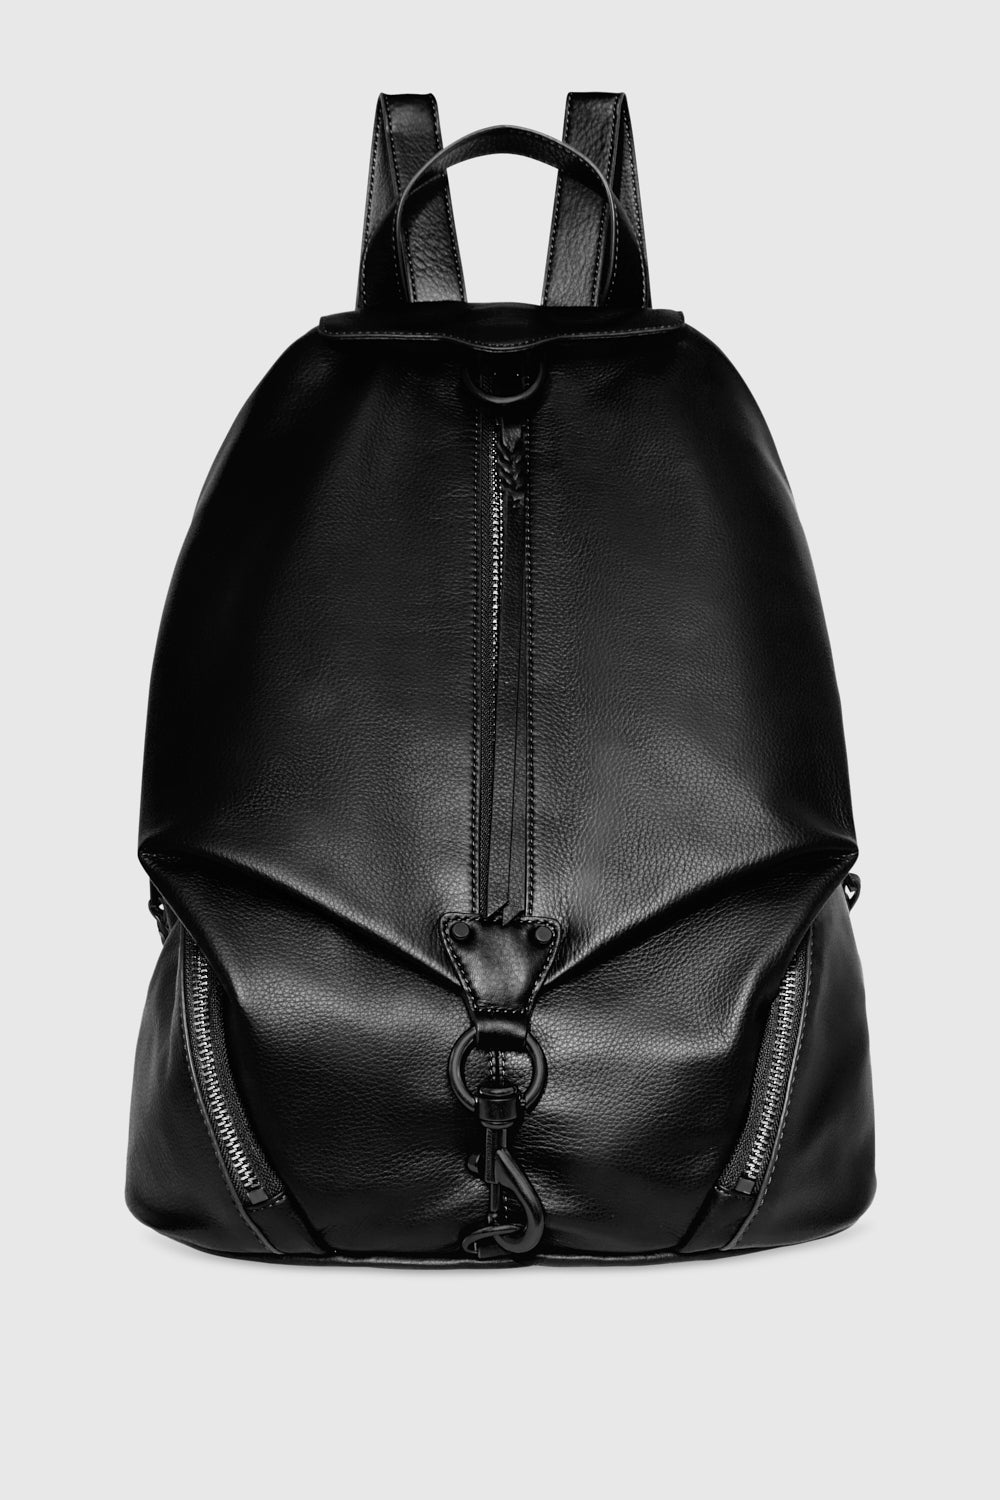 Rebecca Minkoff Julian Jumbo Leather Backpack Black